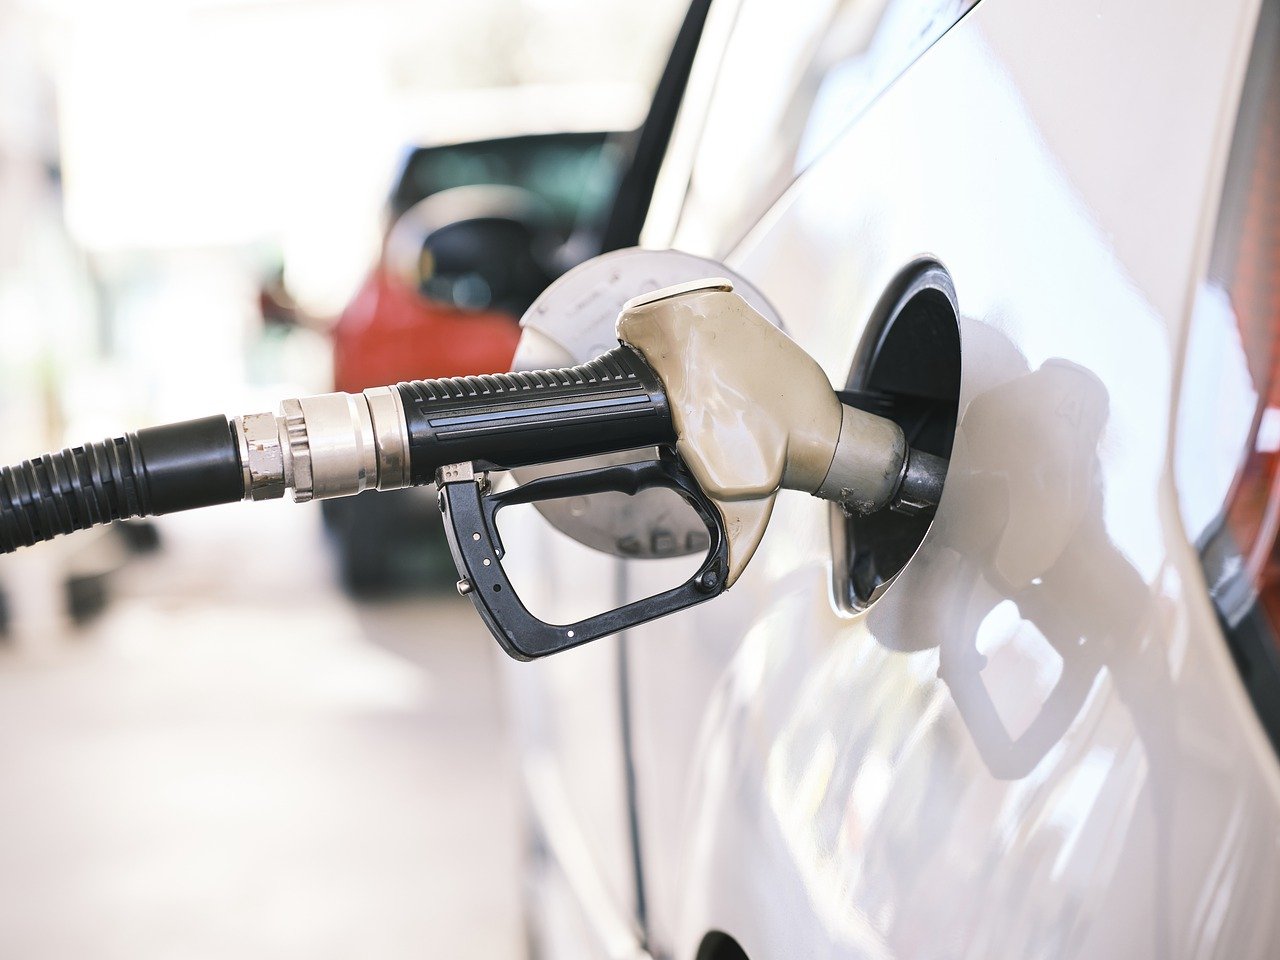 Nuovi aumenti prezzi carburanti, c’è attesa per un nuovo taglio accise